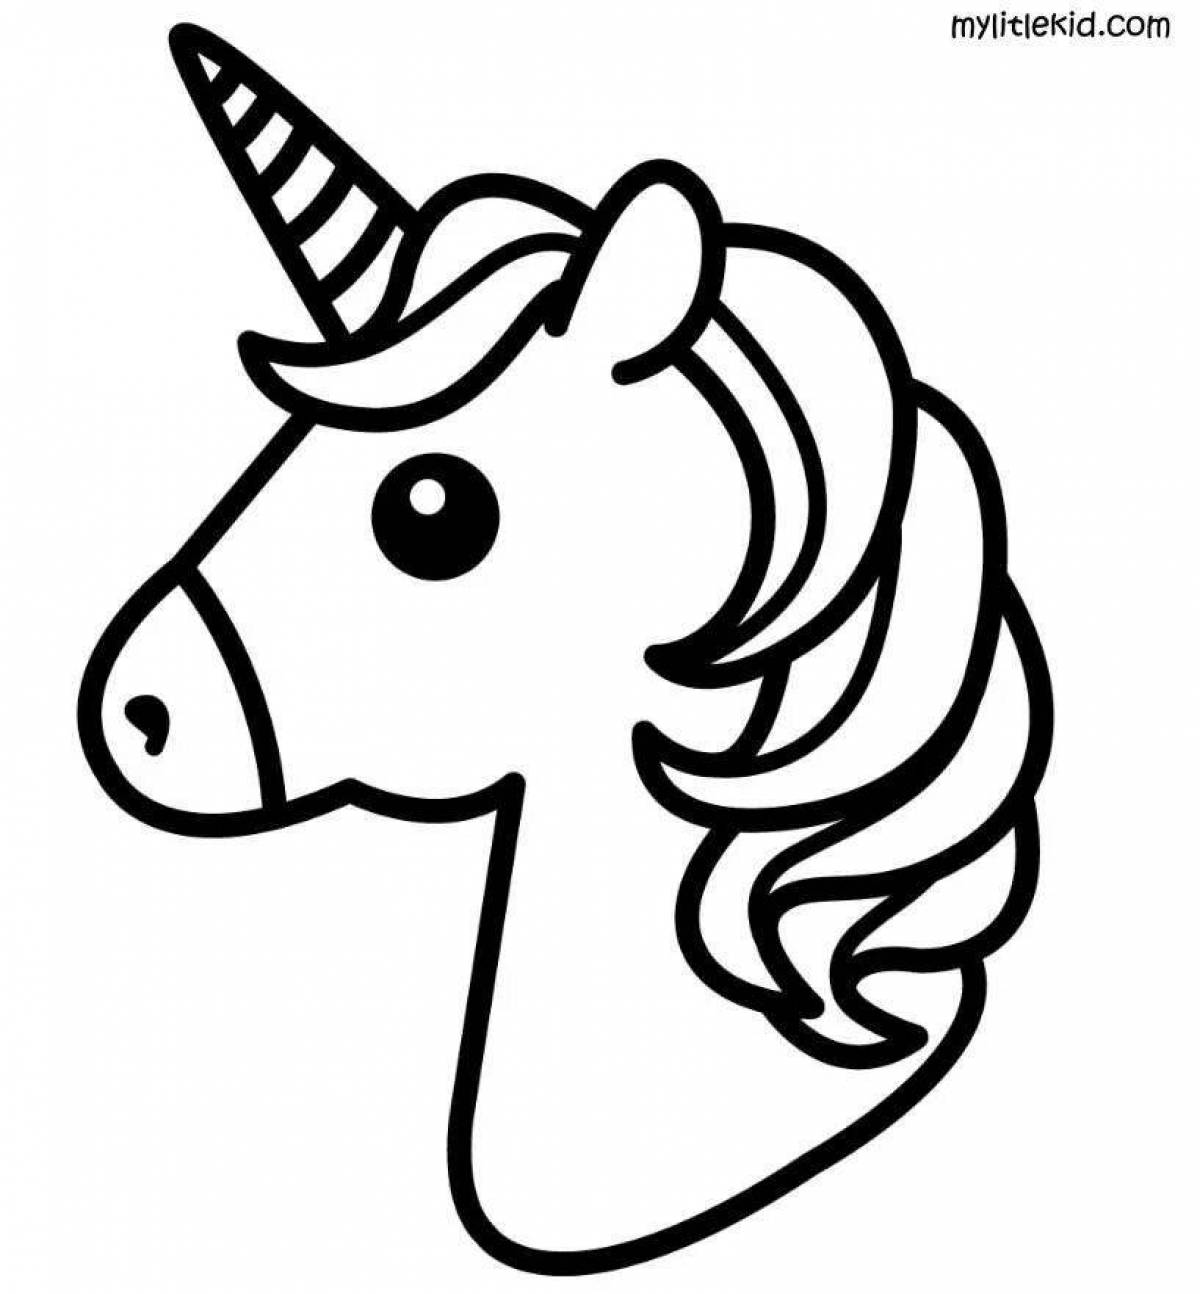 Exquisite unicorn head coloring book